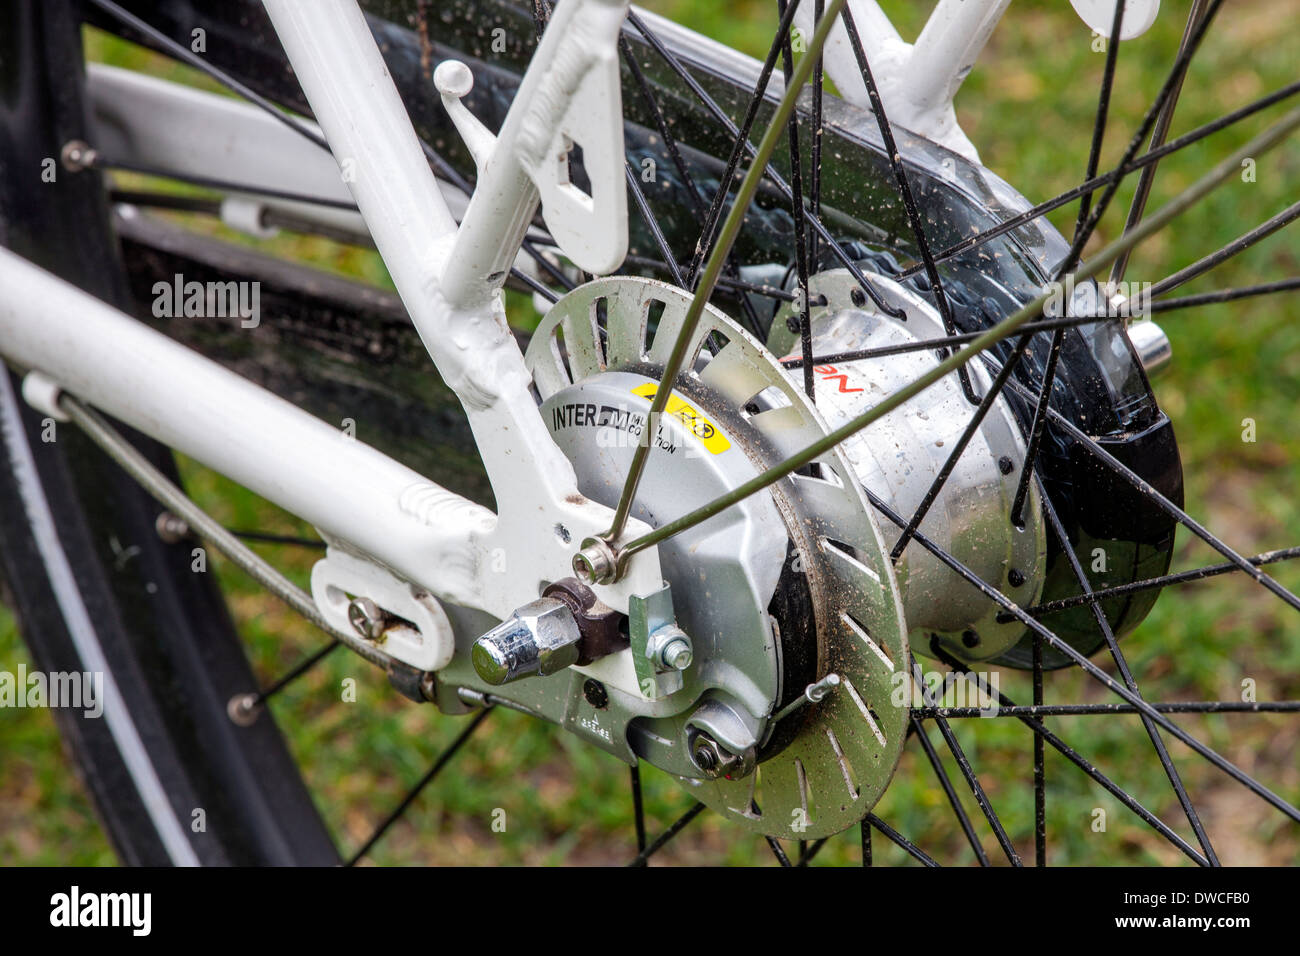 Moteur de moyeu arrière / pedelec e-bike vélo électrique / Banque D'Images